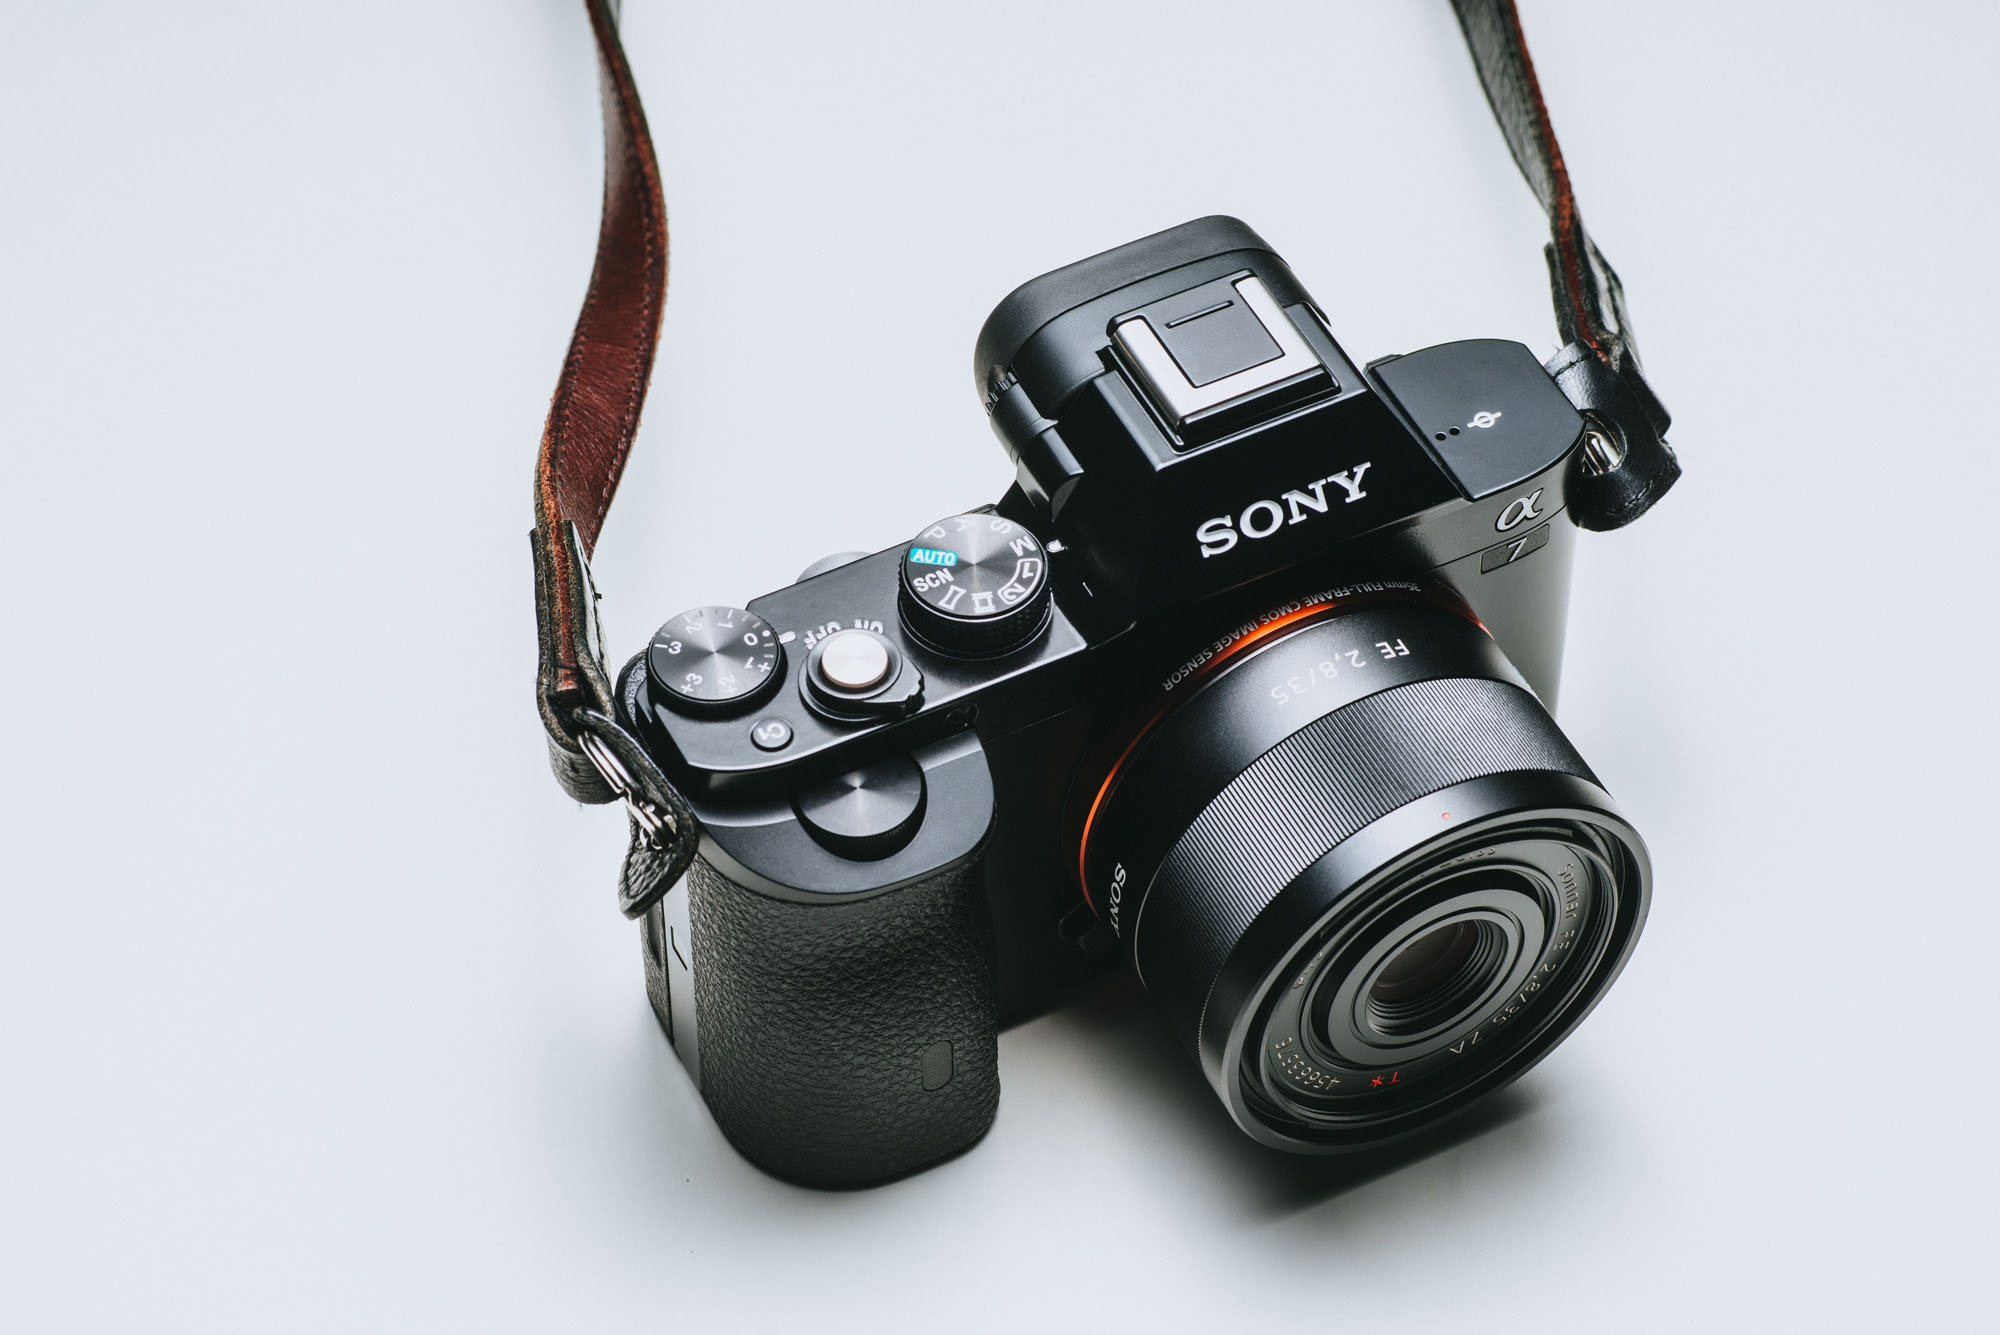 カメラ レンズ(単焦点) Sony (Zeiss) Sonnar T* FE 35mm f/2.8 ZA review – Review By Richard